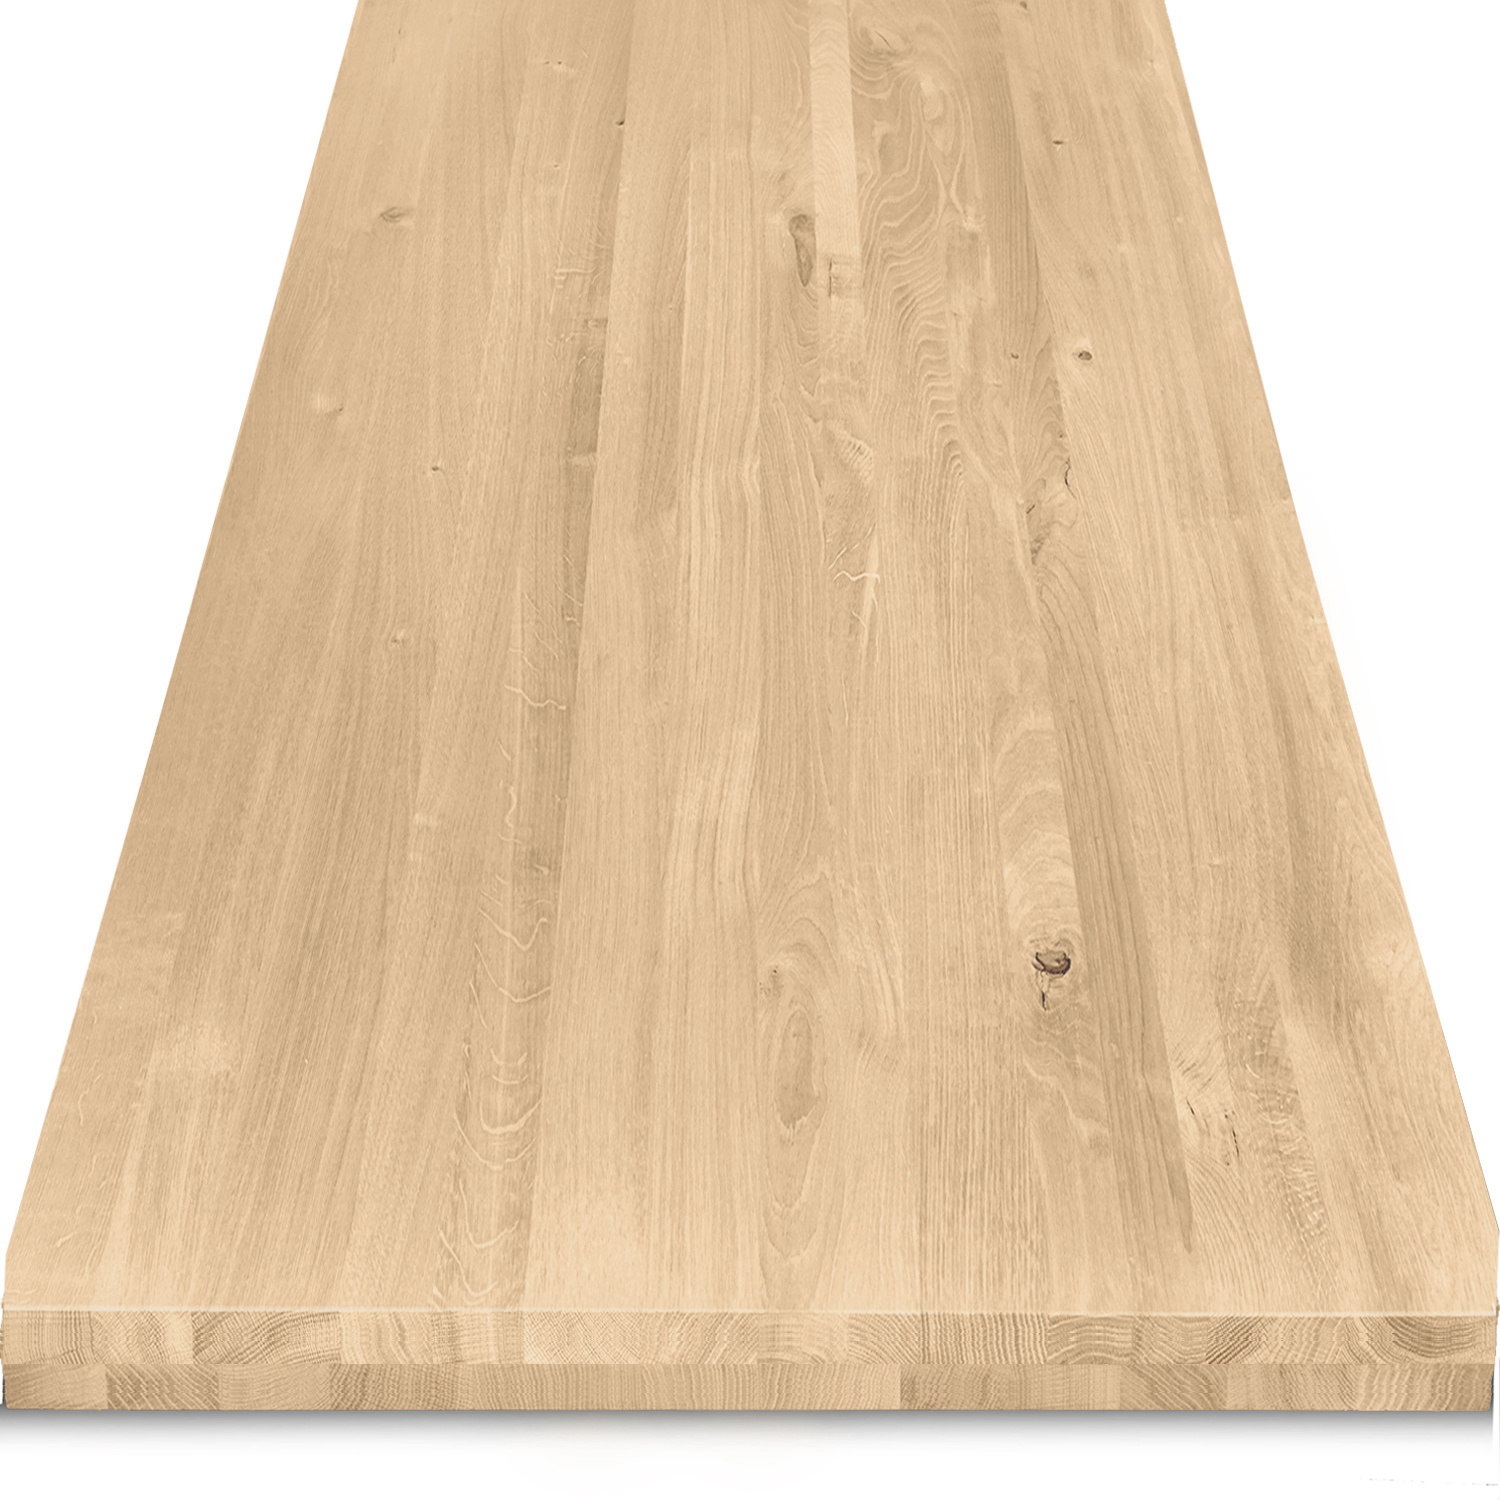  Eiken tafelblad op maat - 6 cm dik (2-laags) - rustiek Europees eikenhout - verlijmd kd 8-12% - 50-120x50-260 cm